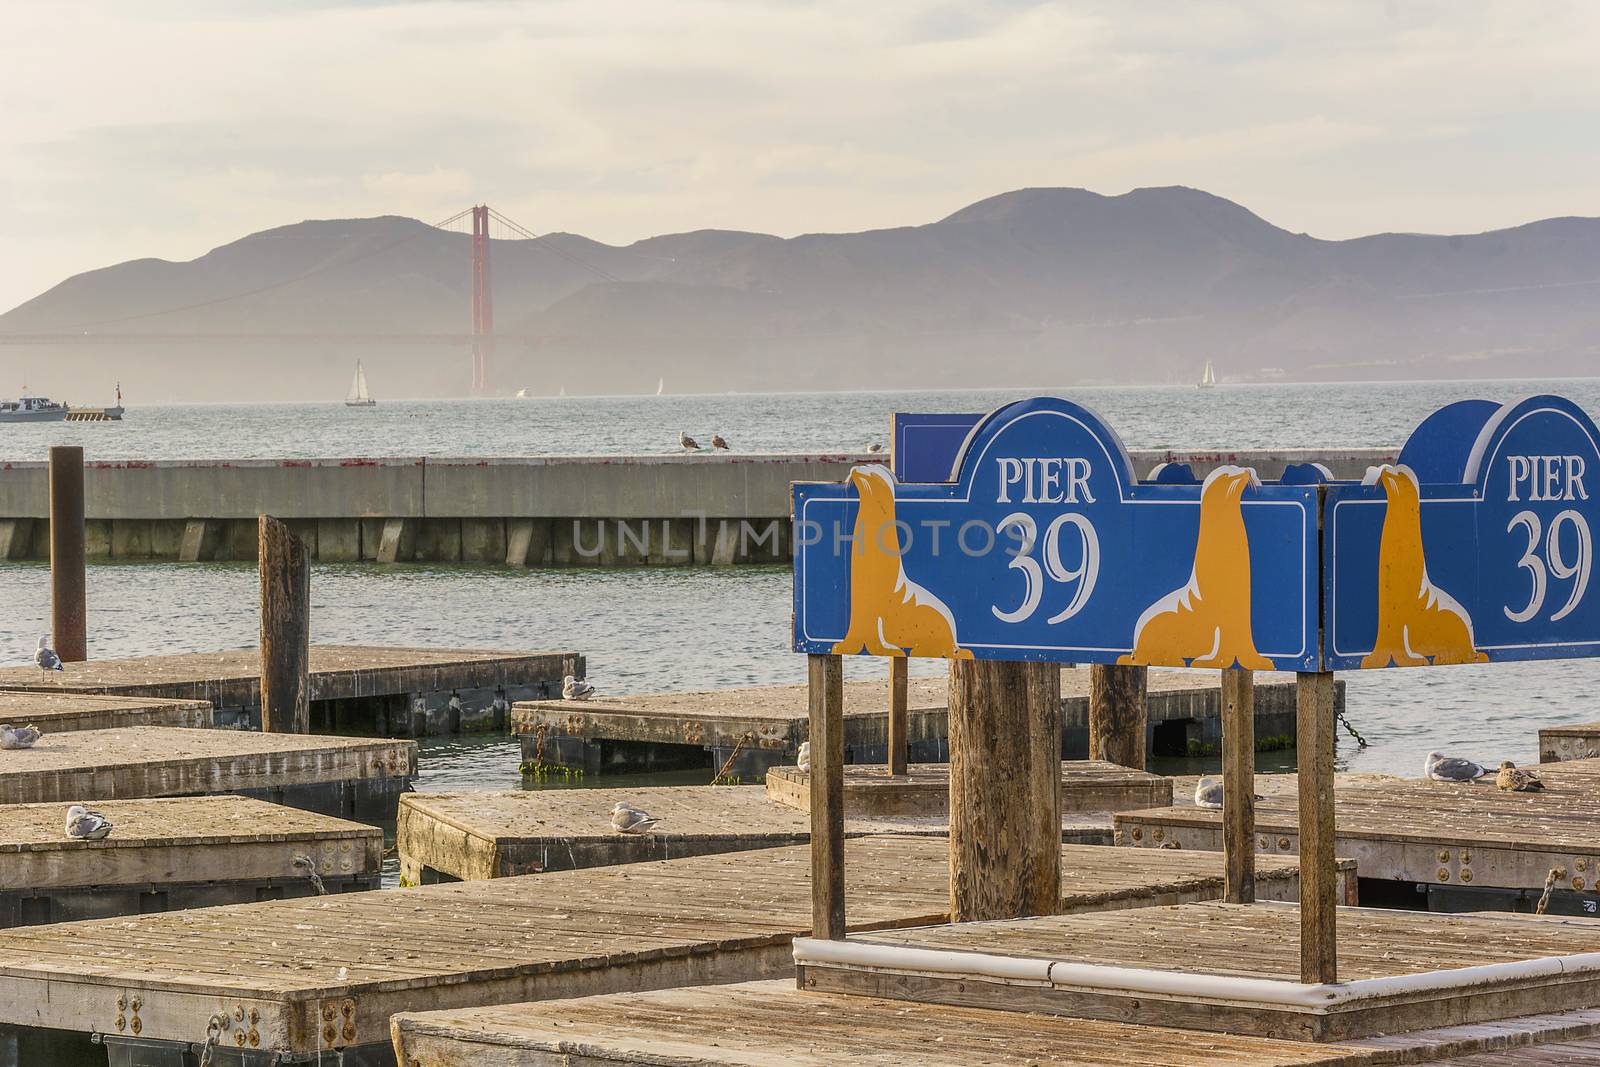 Pier 39 in San Francisco by rarrarorro